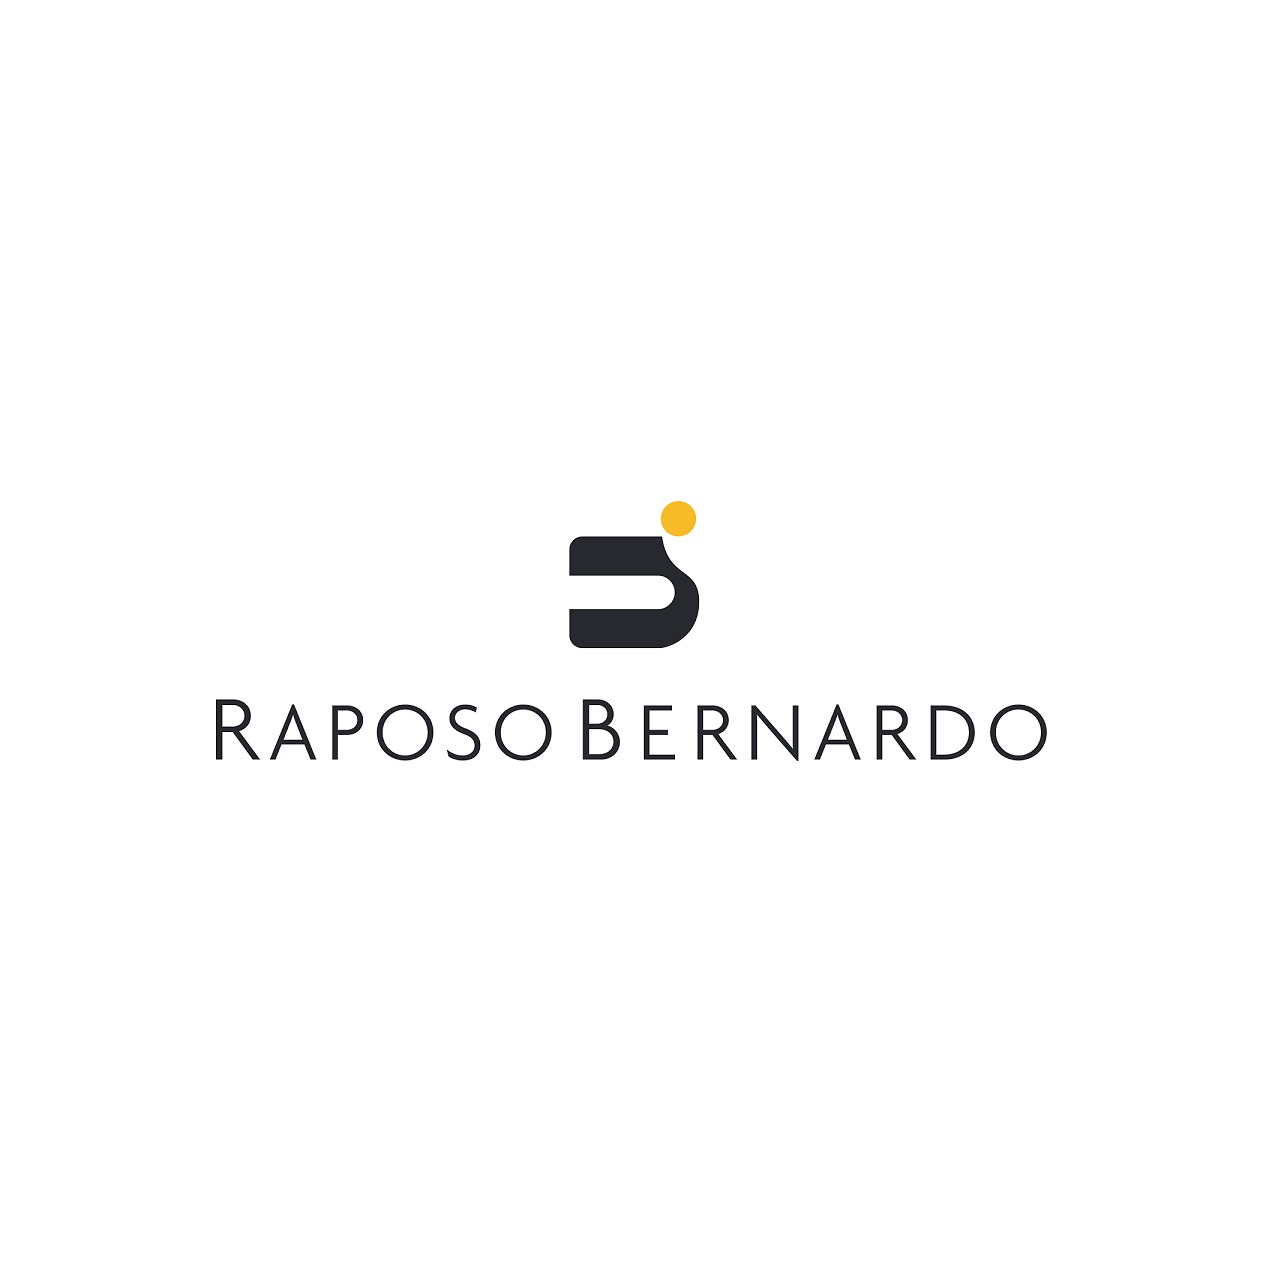 the Raposo Bernardo & Associados logo.